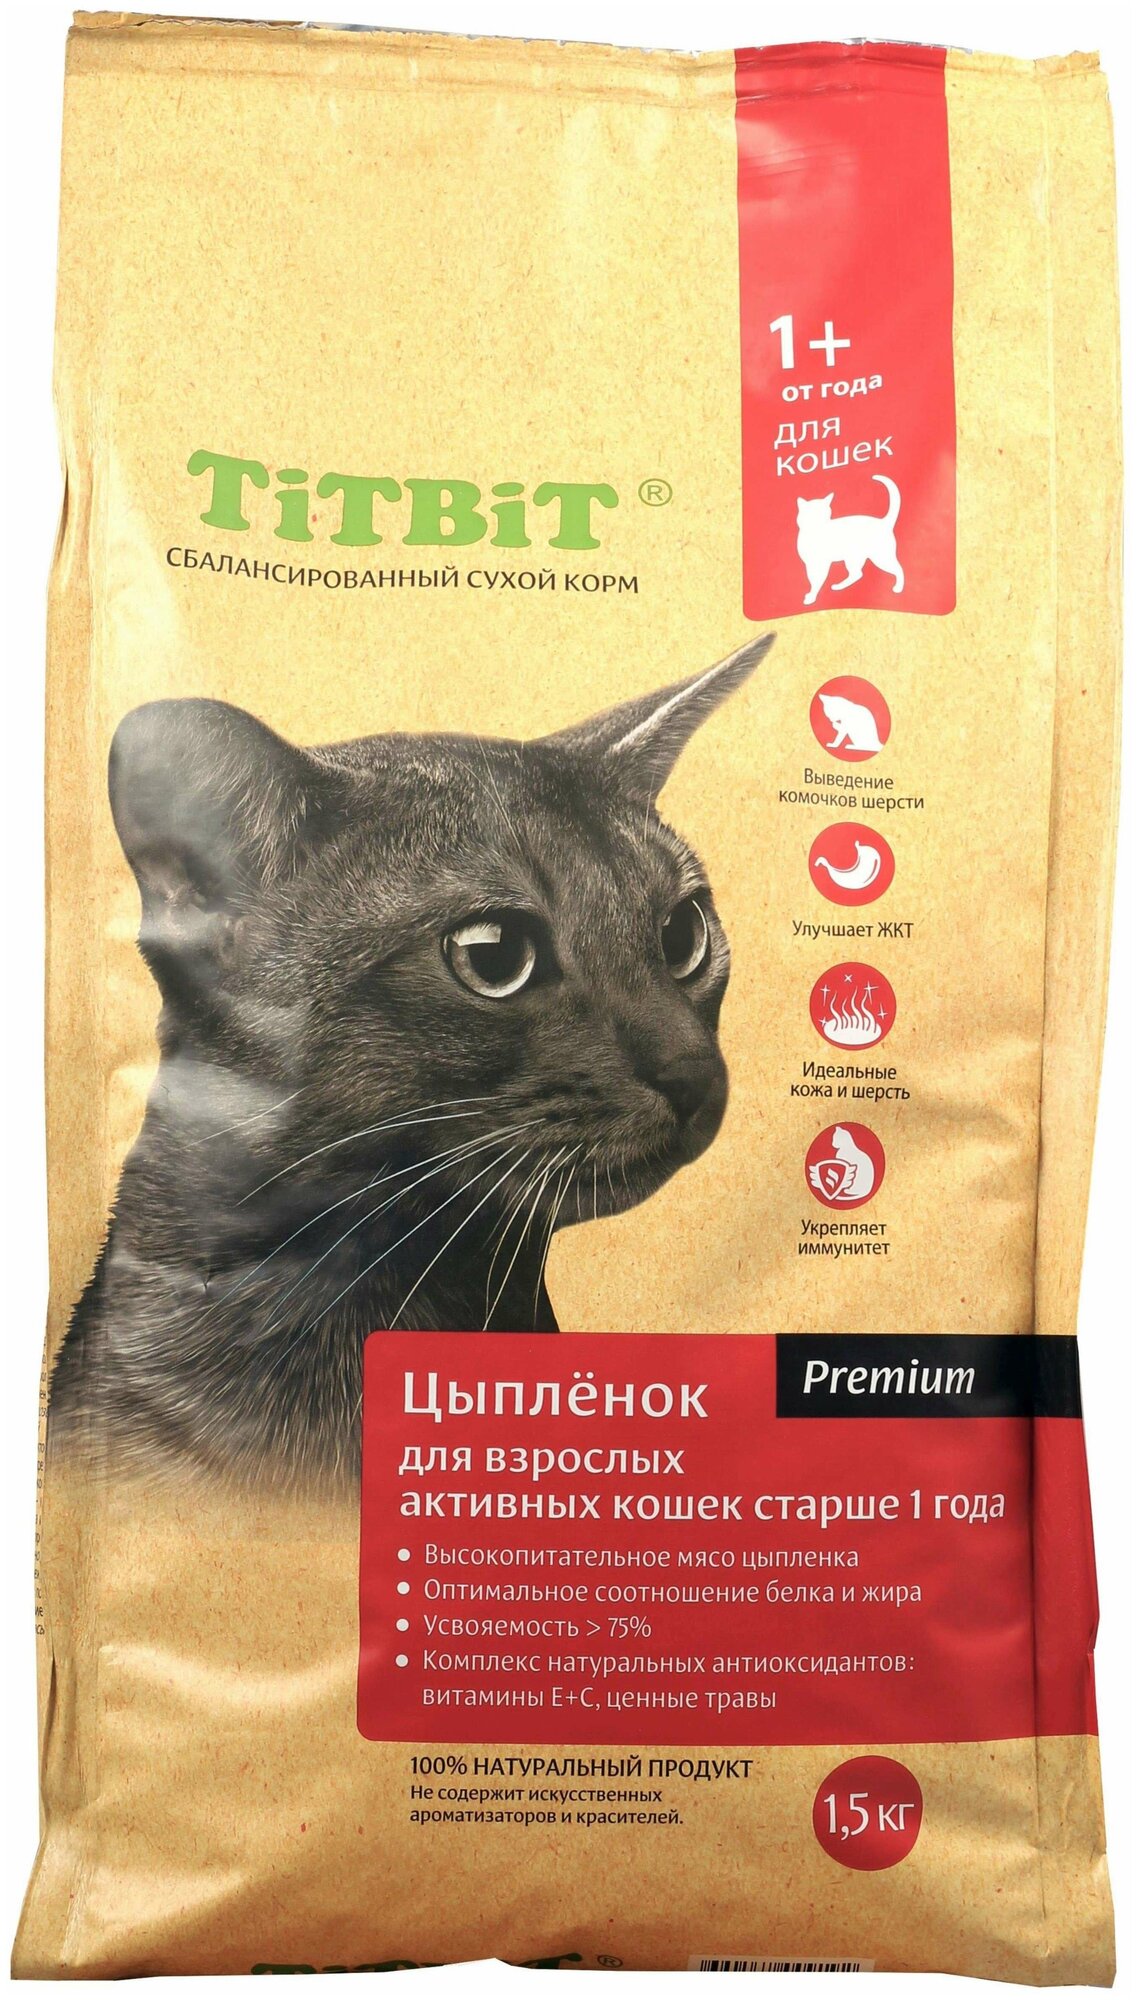 Сухой корм для взрослых активных кошек Titbit с цыпленком